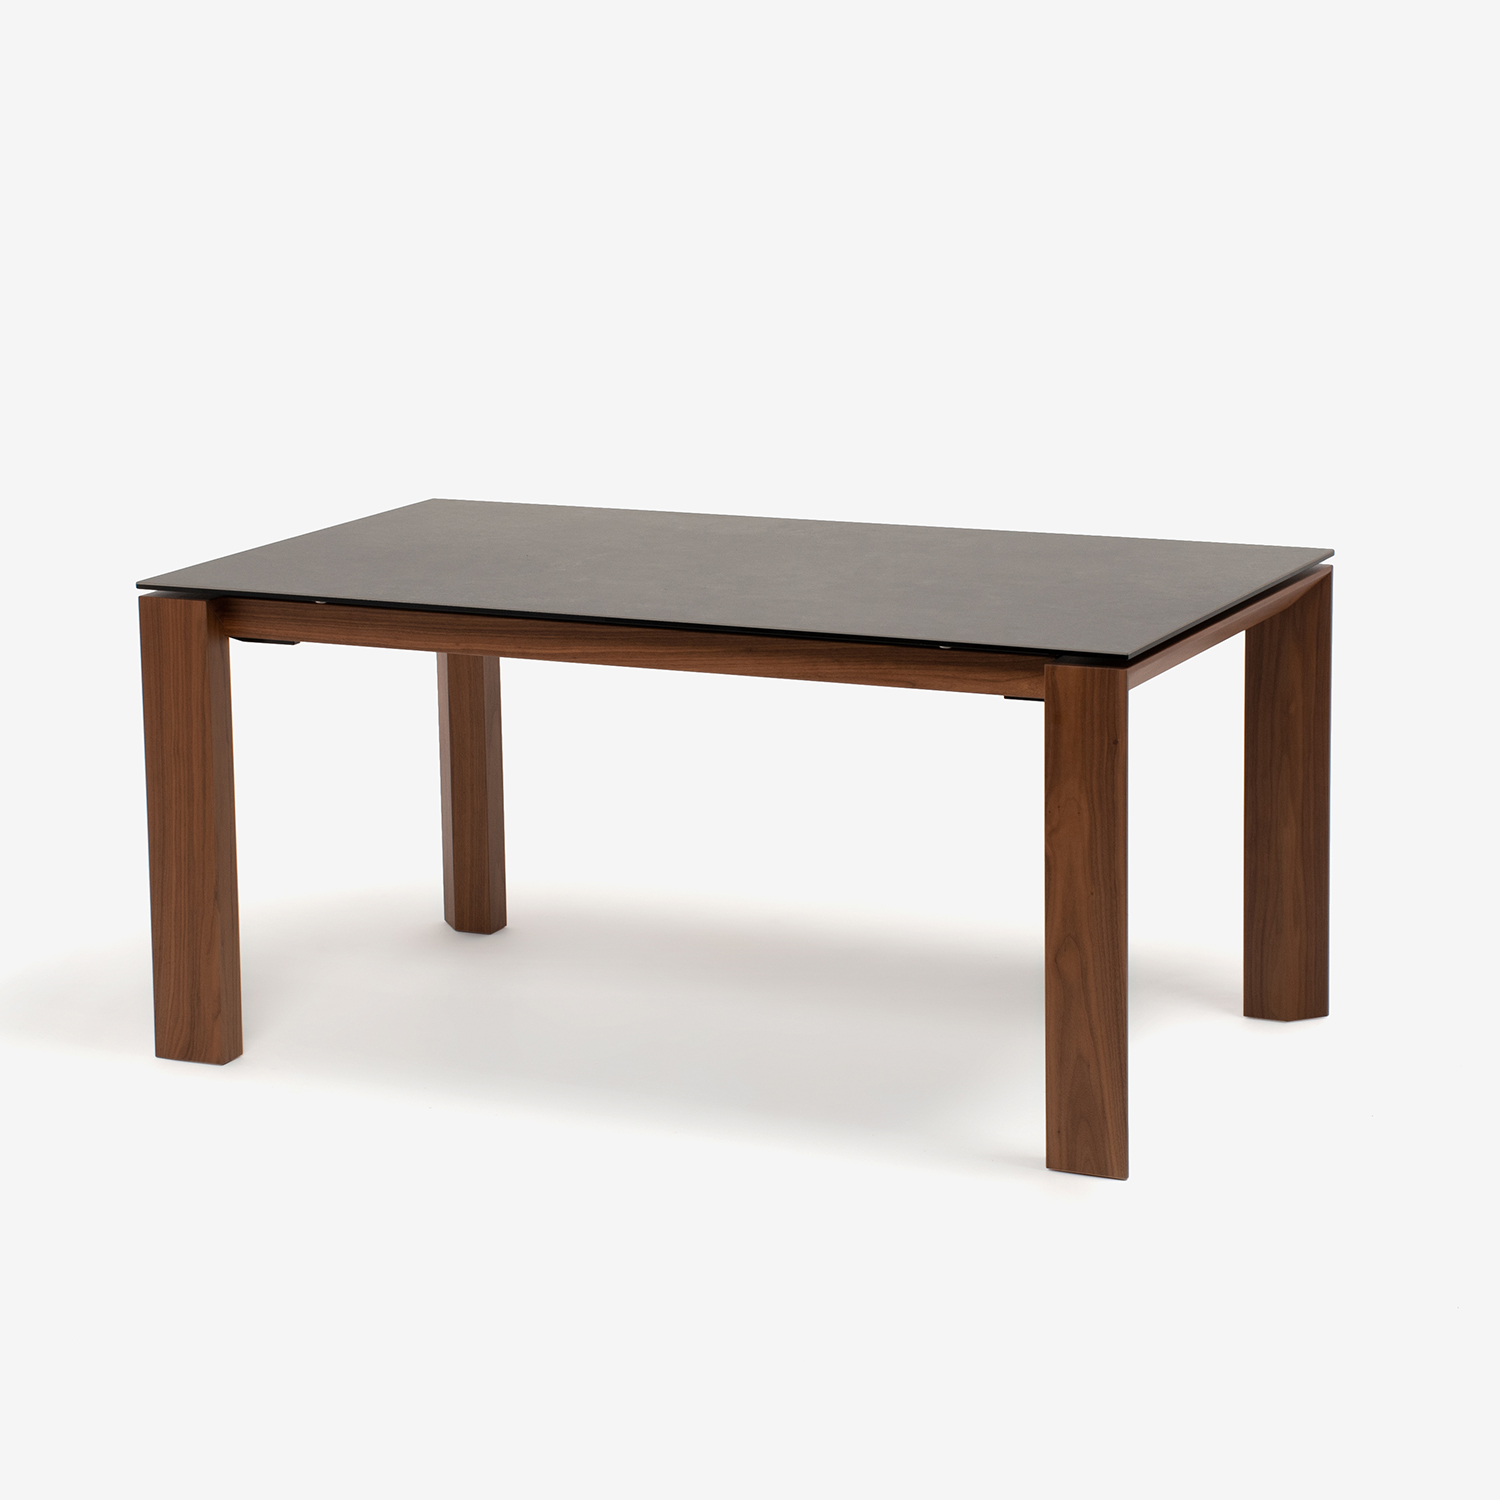 ダイニングテーブル「パシオン セラミックトップ」幅138cm | 大塚家具 